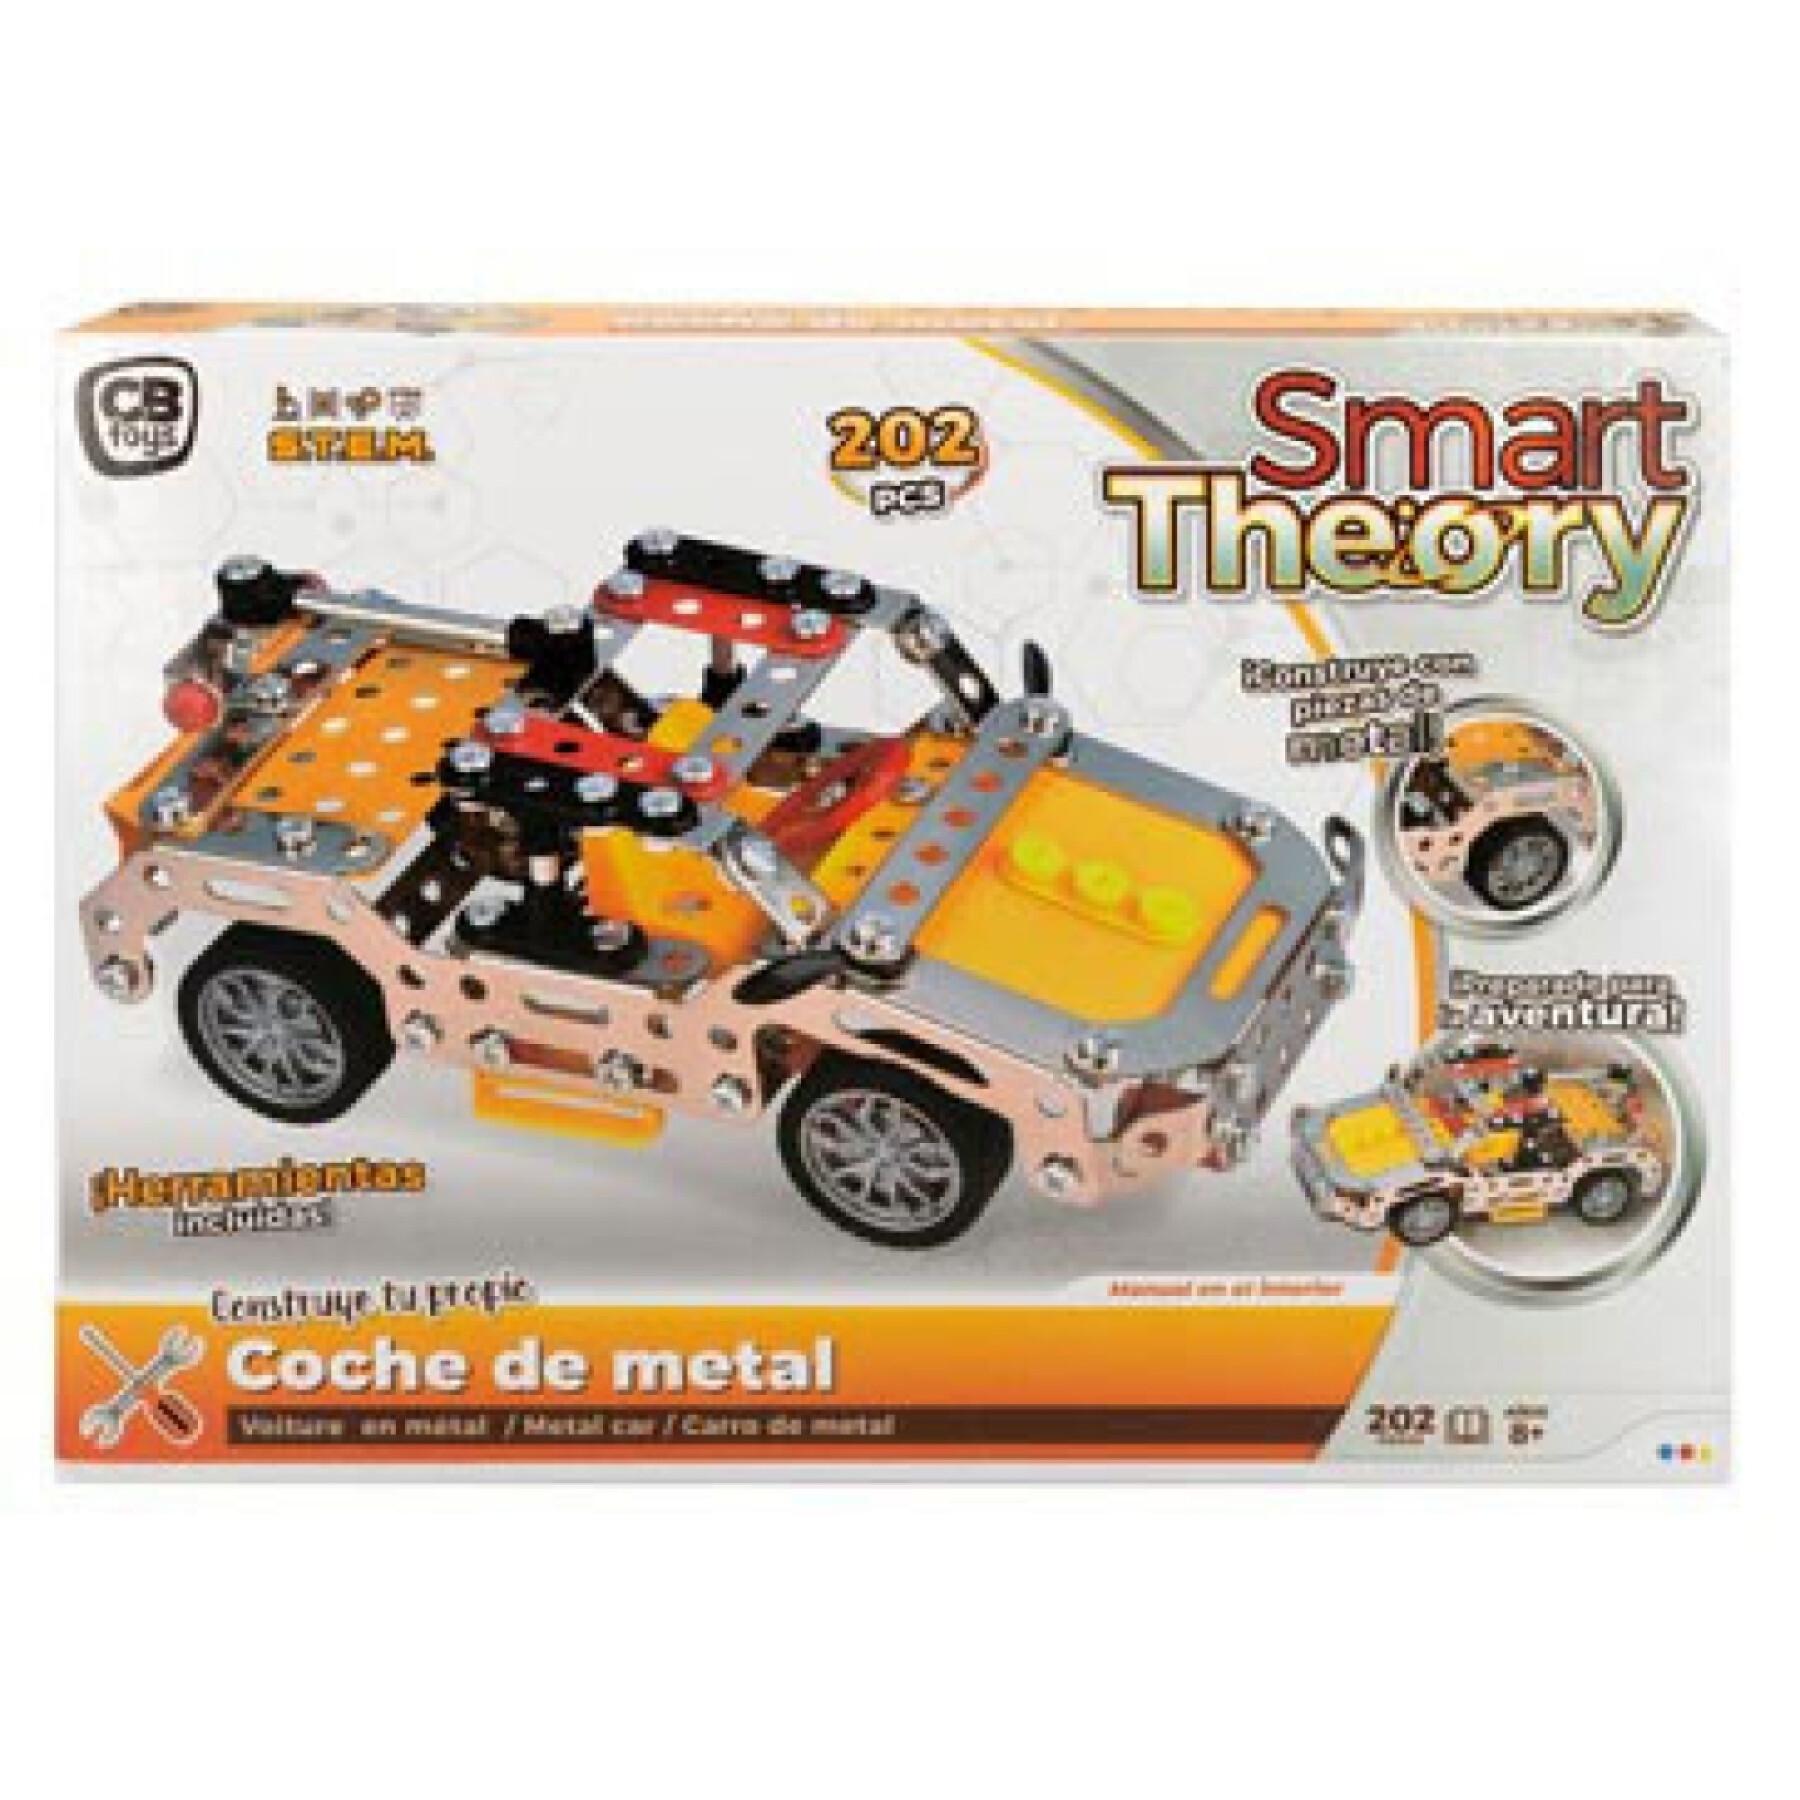 Metalen mechaniek bouwpakket CB Toys